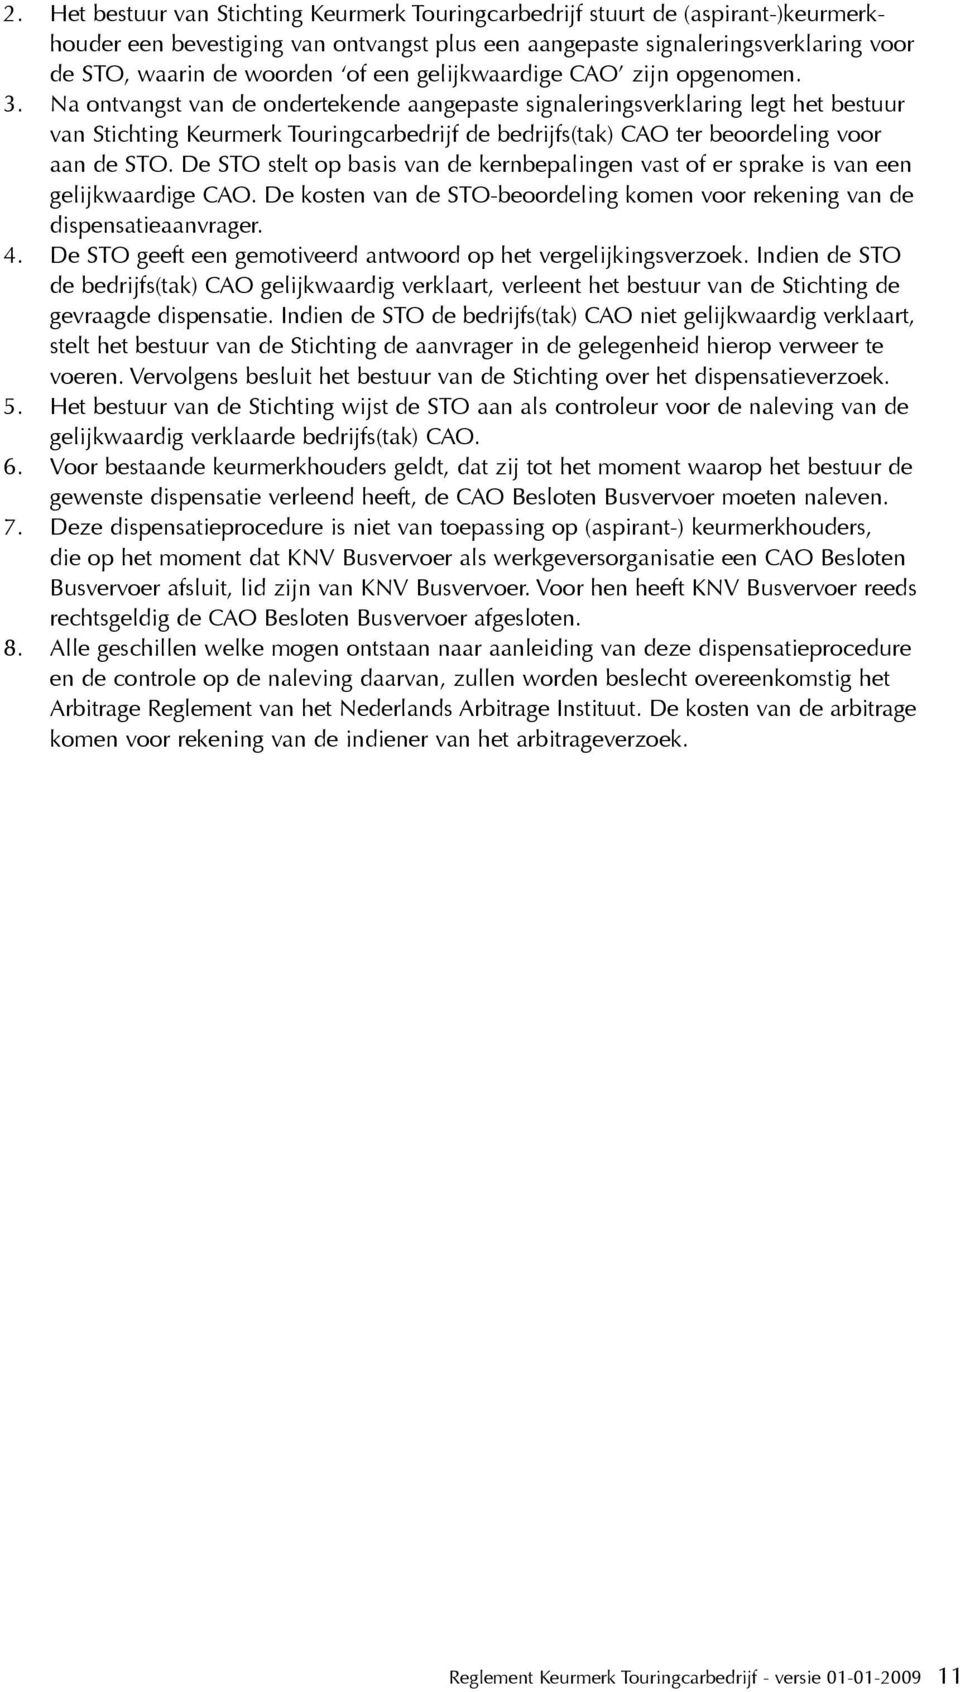 Na ontvangst van de ondertekende aangepaste signaleringsverklaring legt het bestuur van Stichting Keurmerk Touringcarbedrijf de bedrijfs(tak) CAO ter beoordeling voor aan de STO.